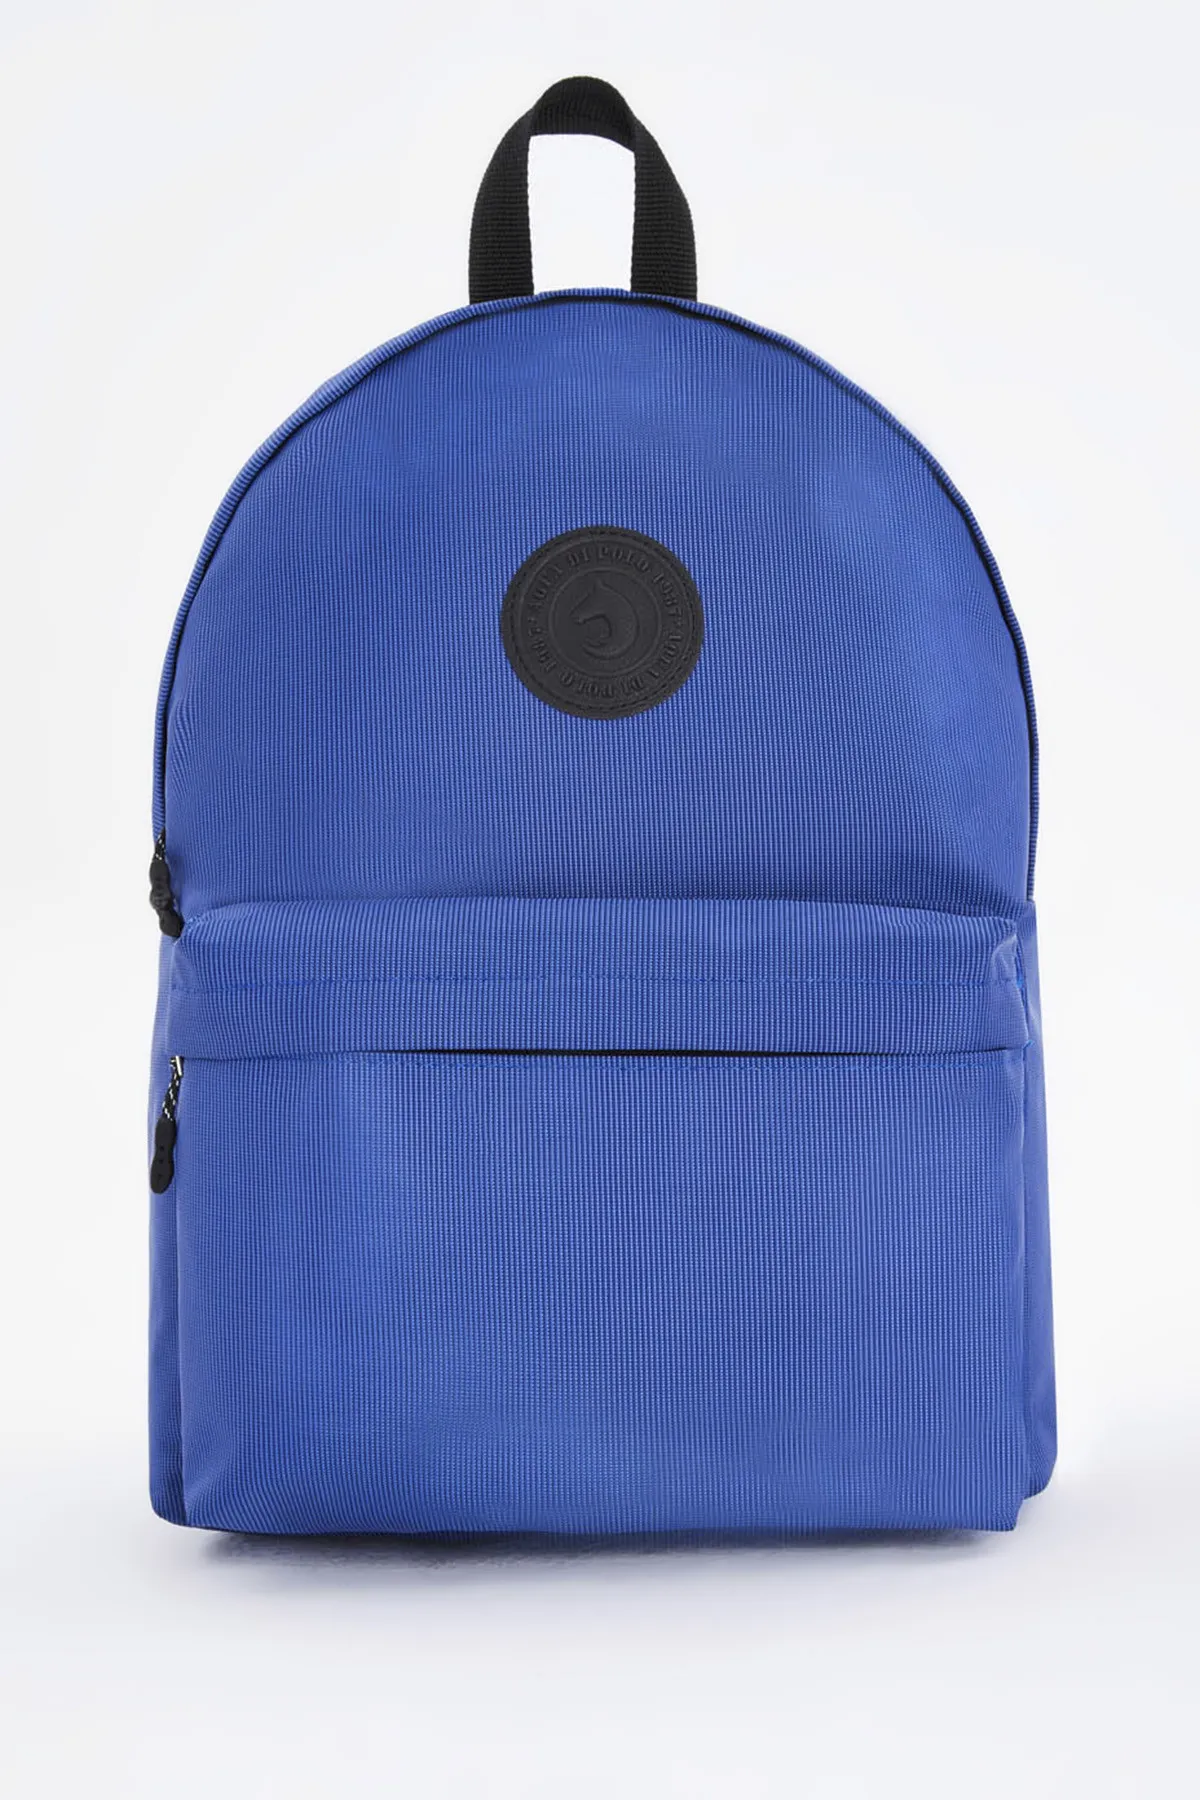 Рюкзак унисекс Di Polo apba0126 темно-синий#4